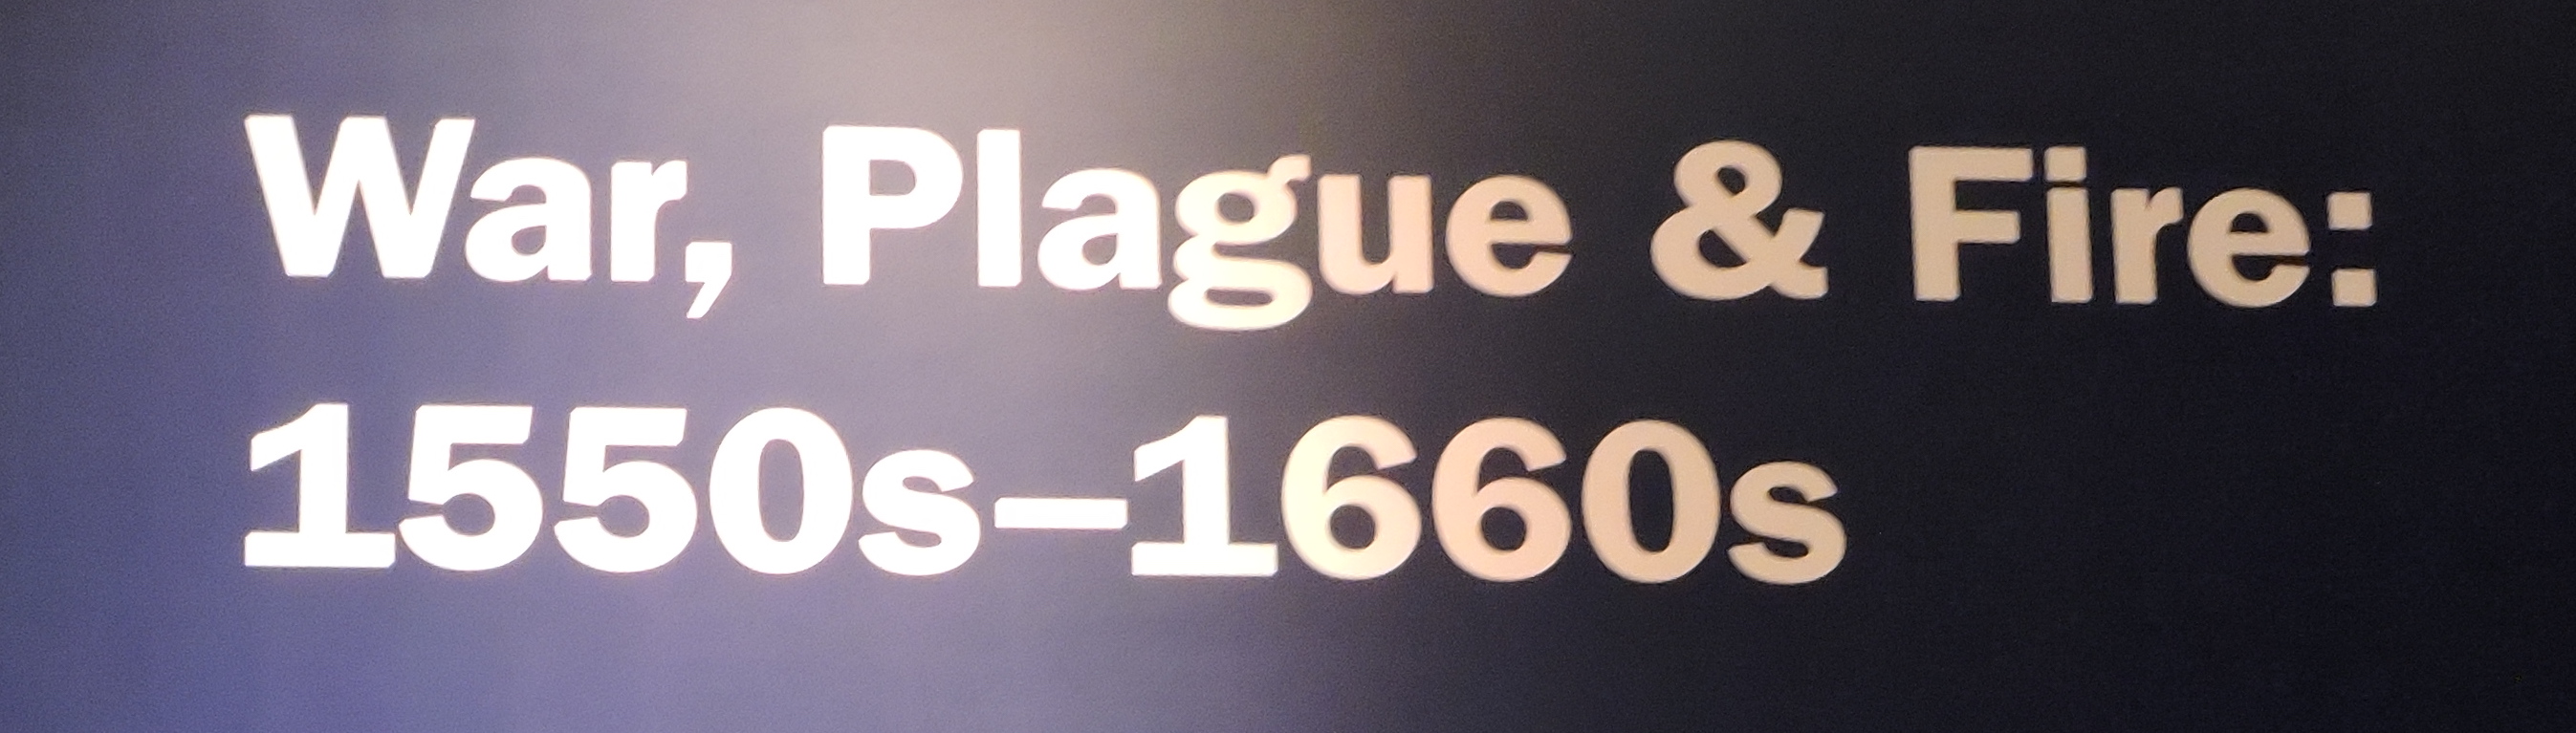 plague war and hellfire